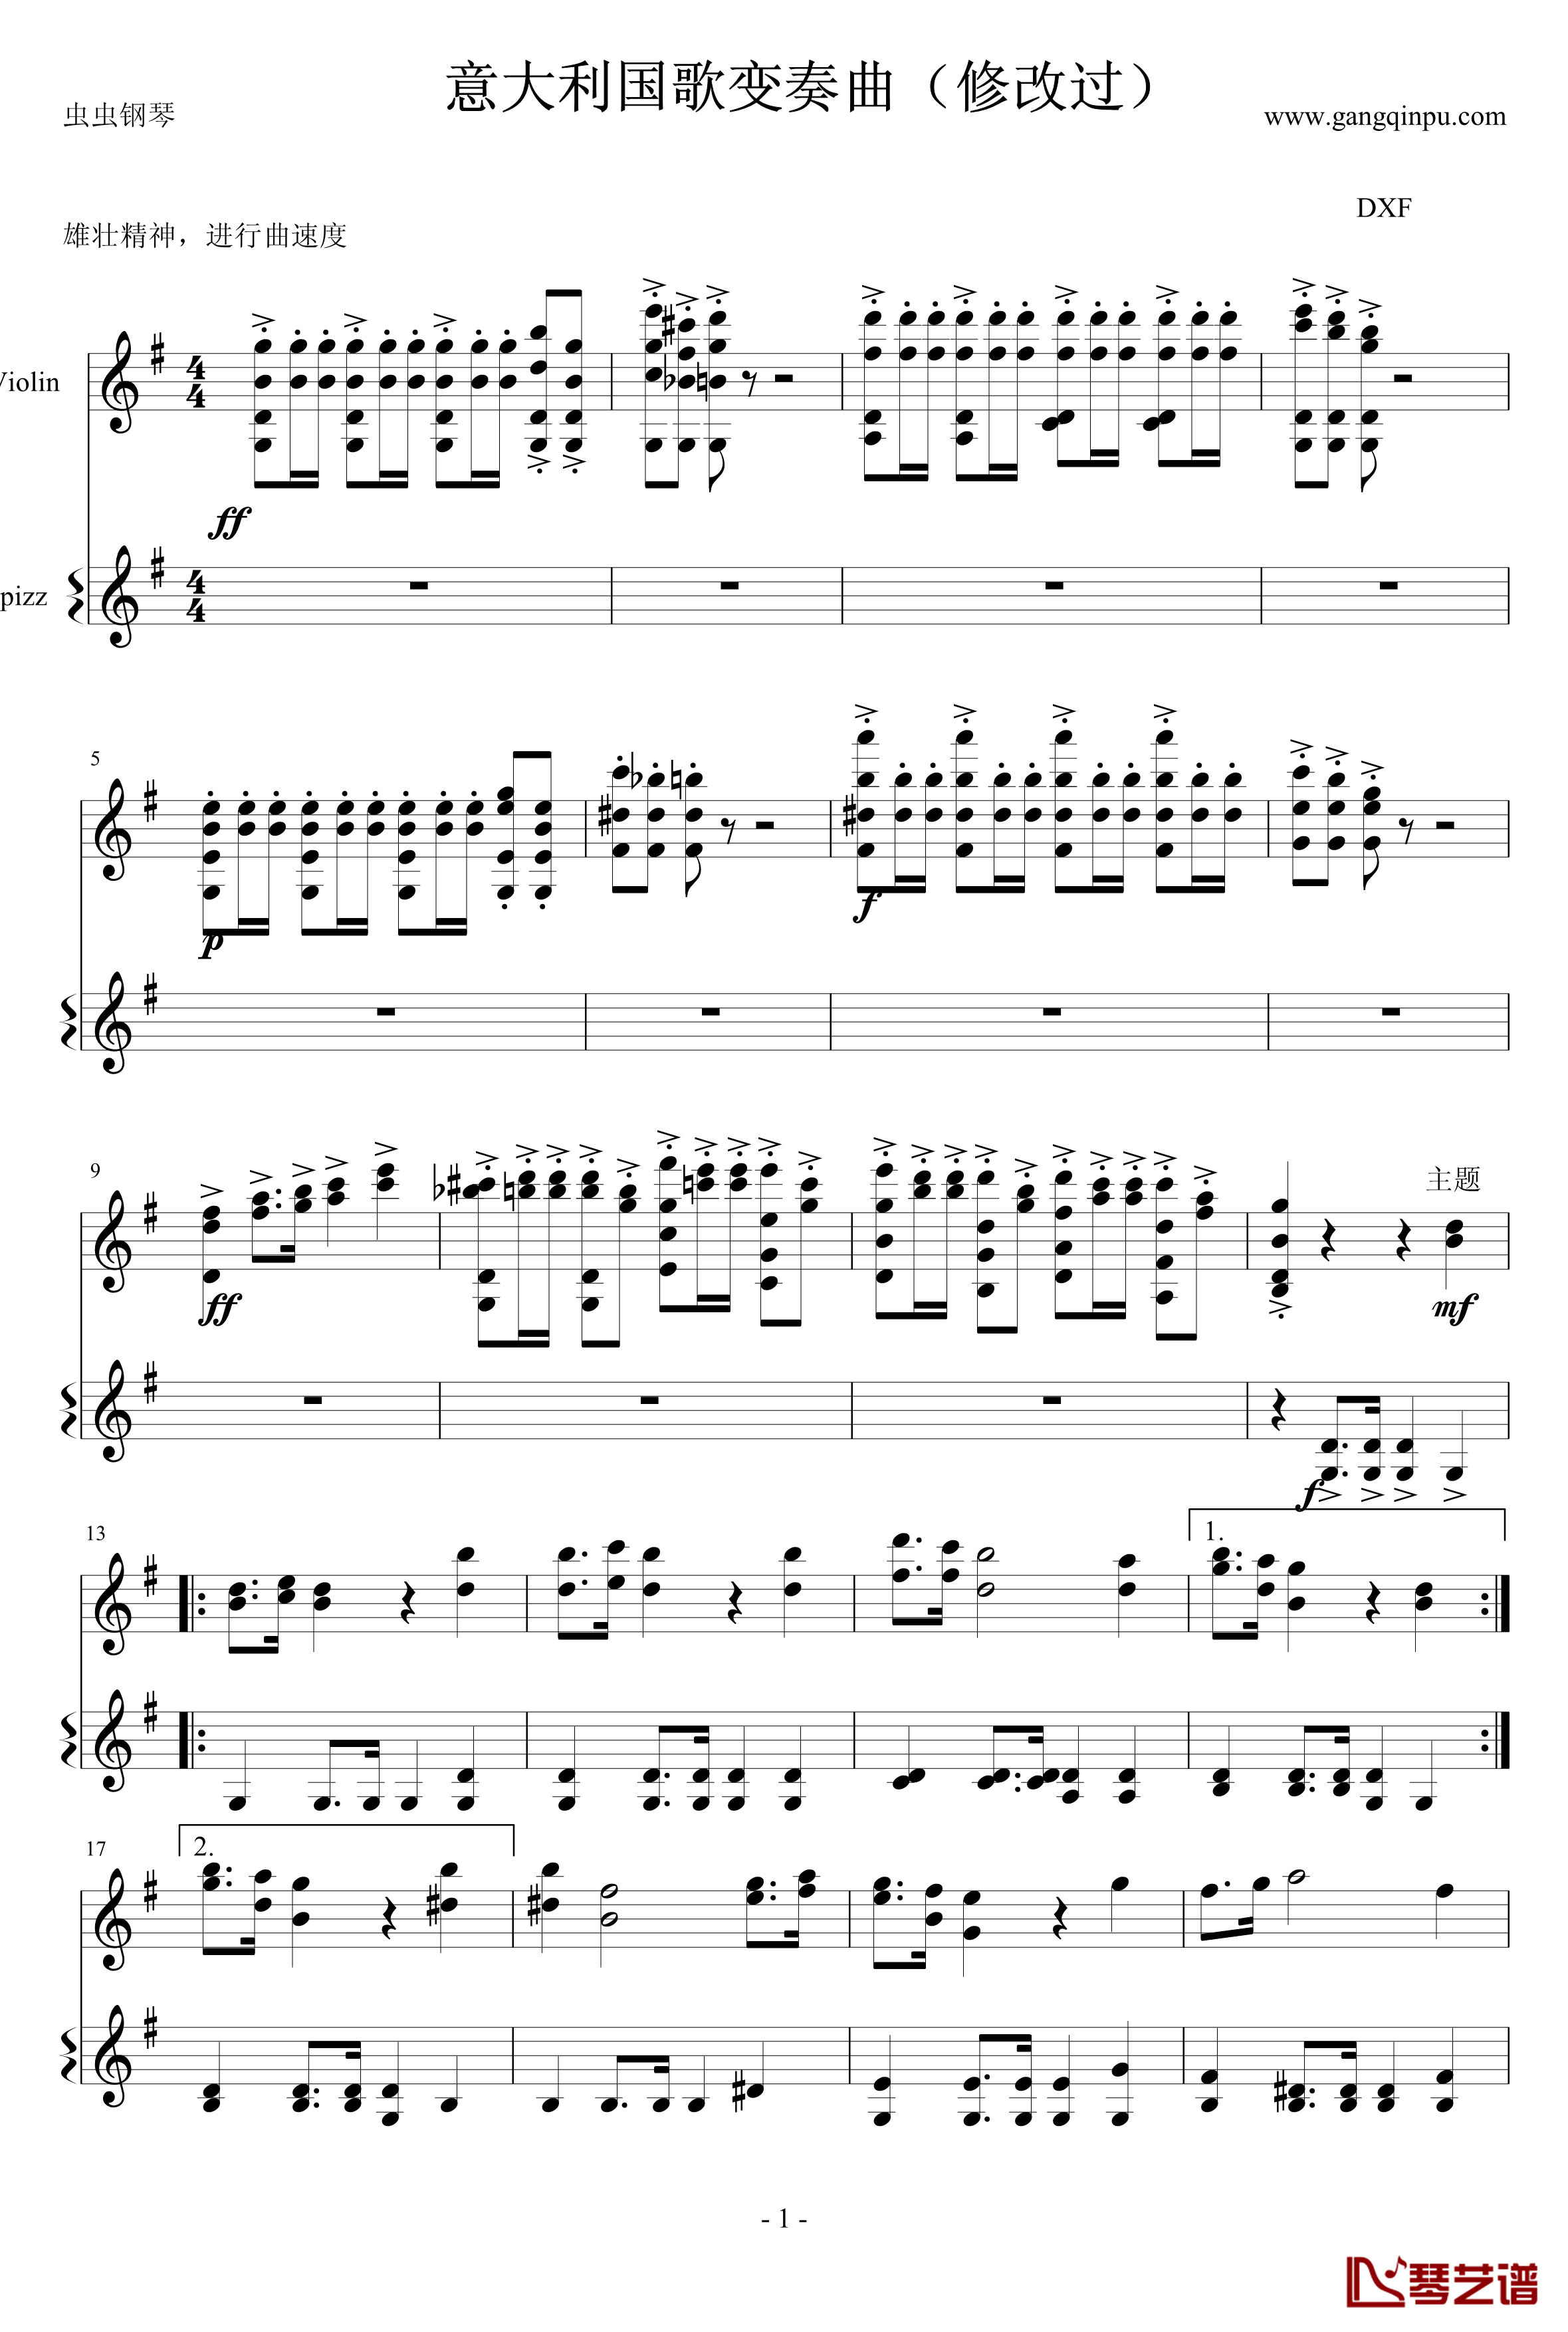 意大利国歌钢琴谱-变奏曲修改版-DXF1